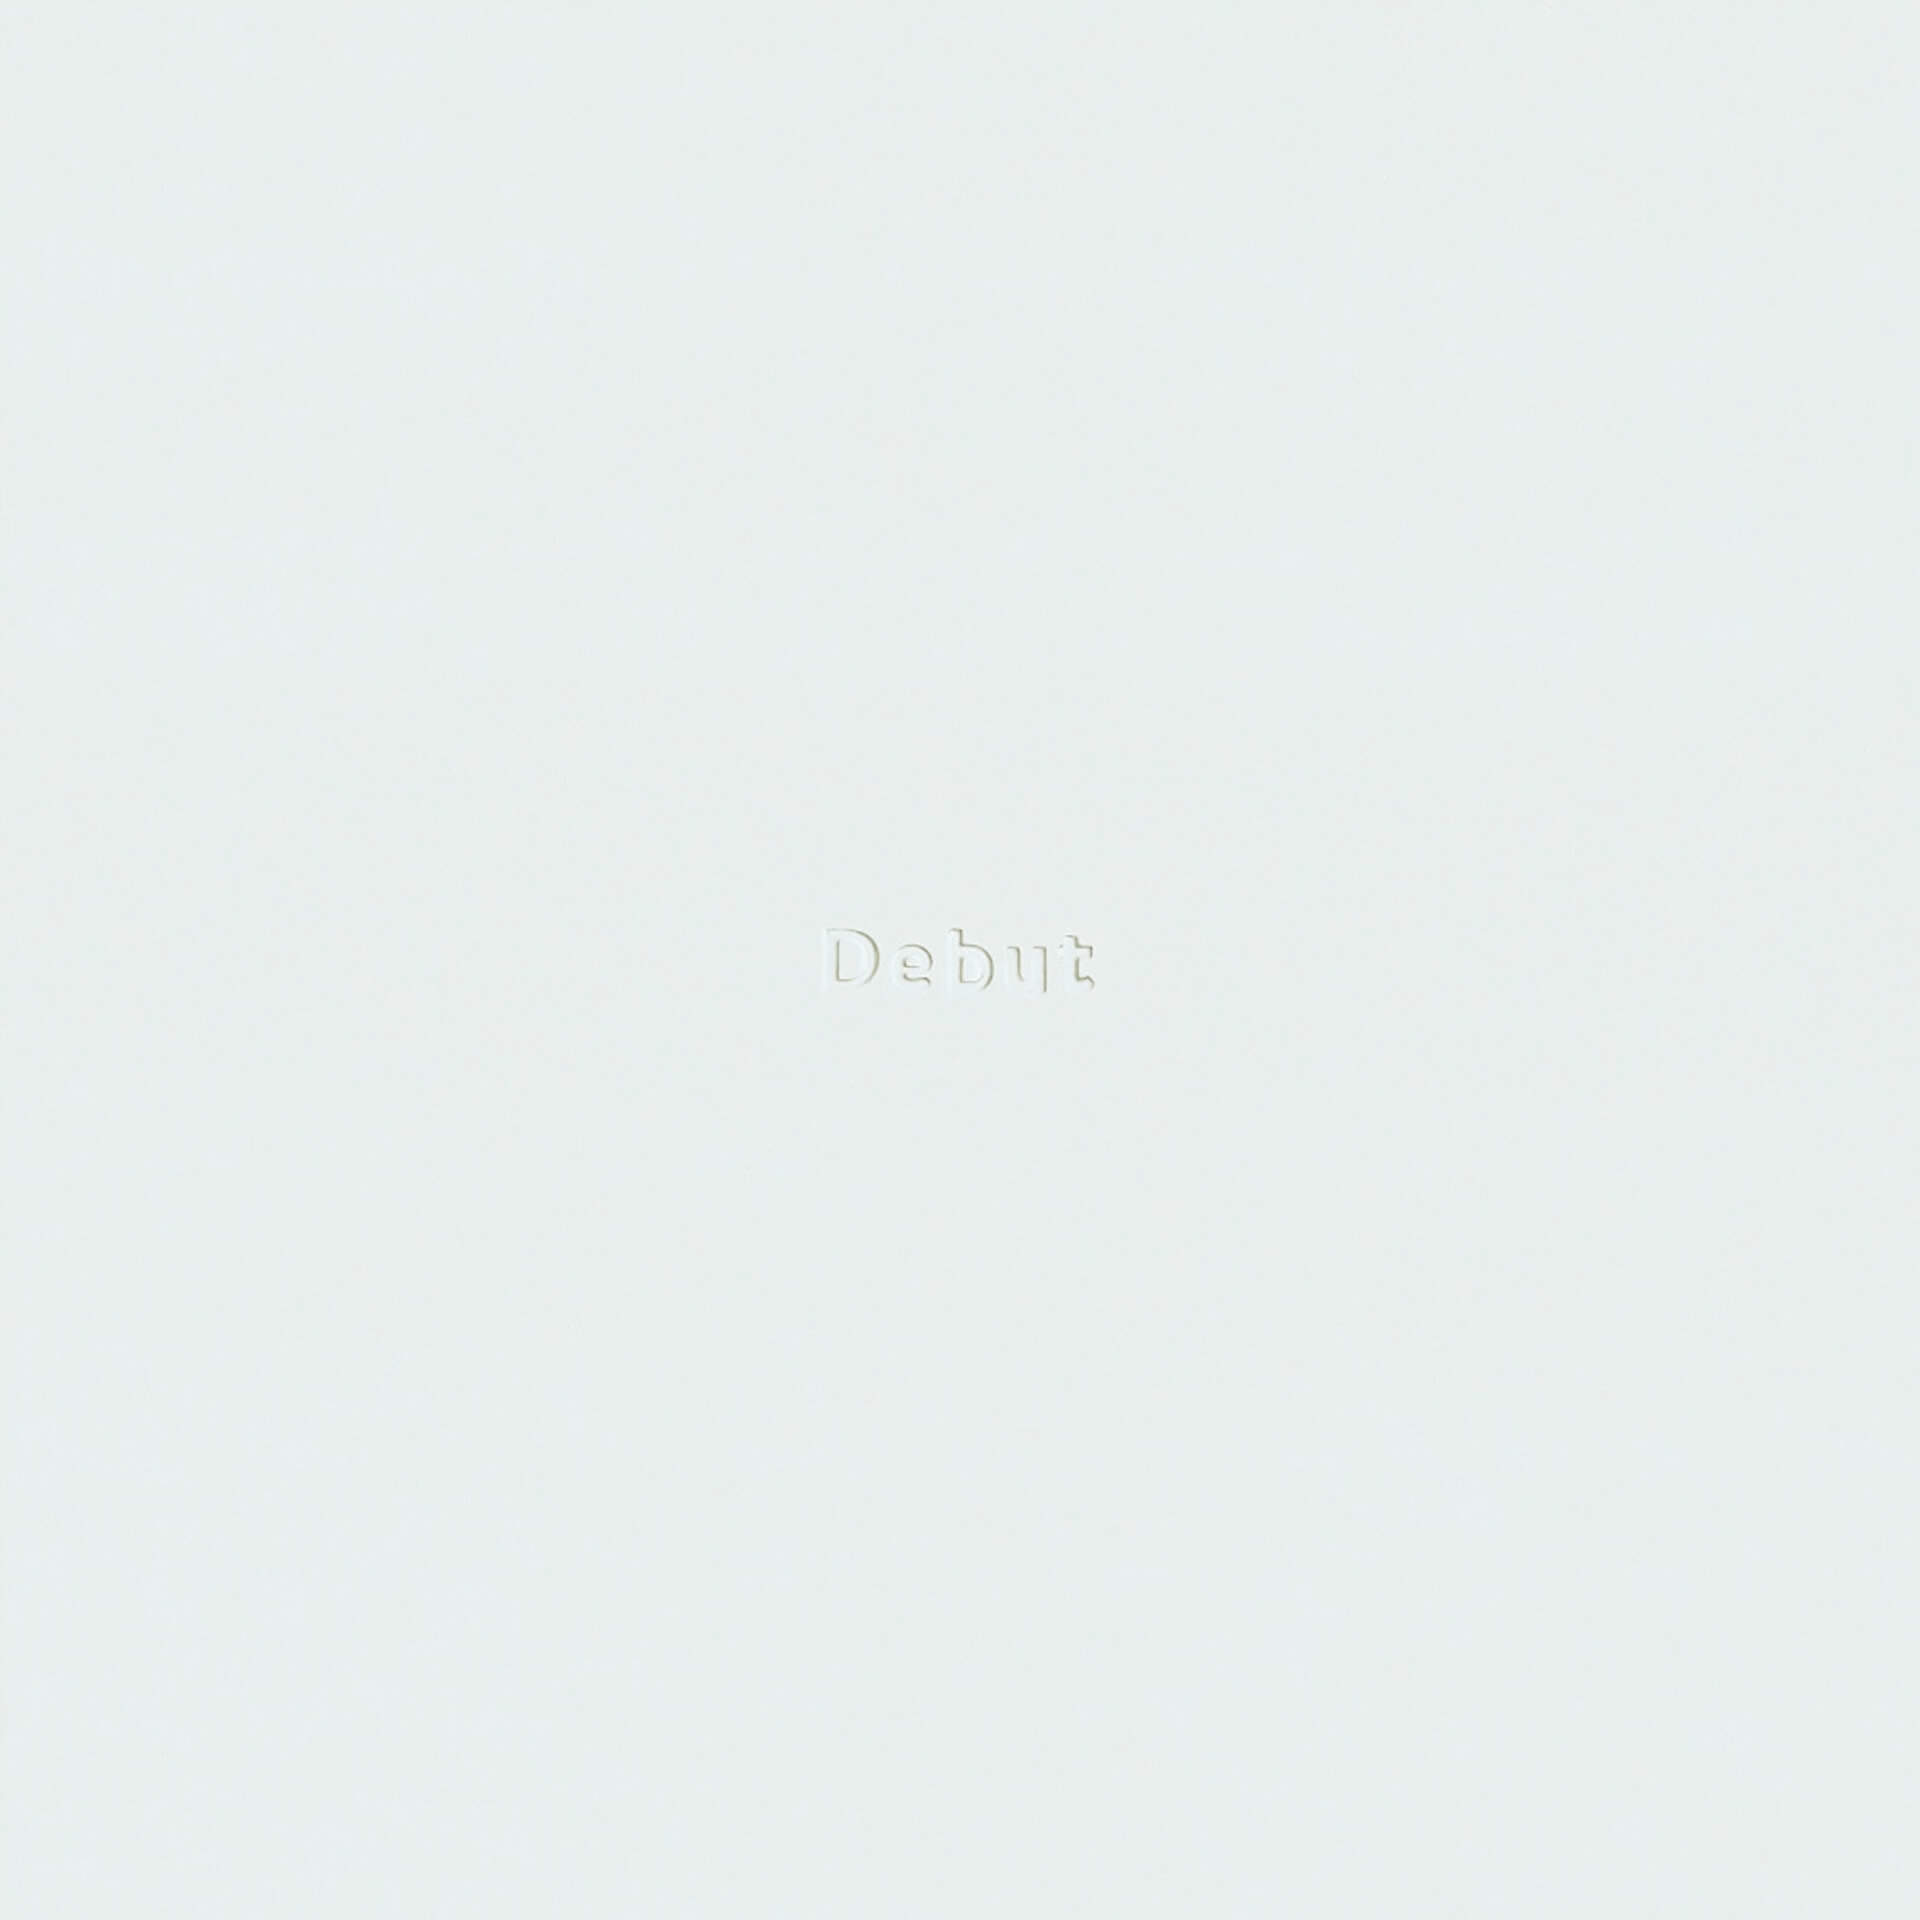 Ryohuの1st Album『DEBUT』リリースを記念したポップアップが開催決定！オカモトレイジリミックス曲付属のフーディーが登場 music201119_ryohu_debut_popup_10